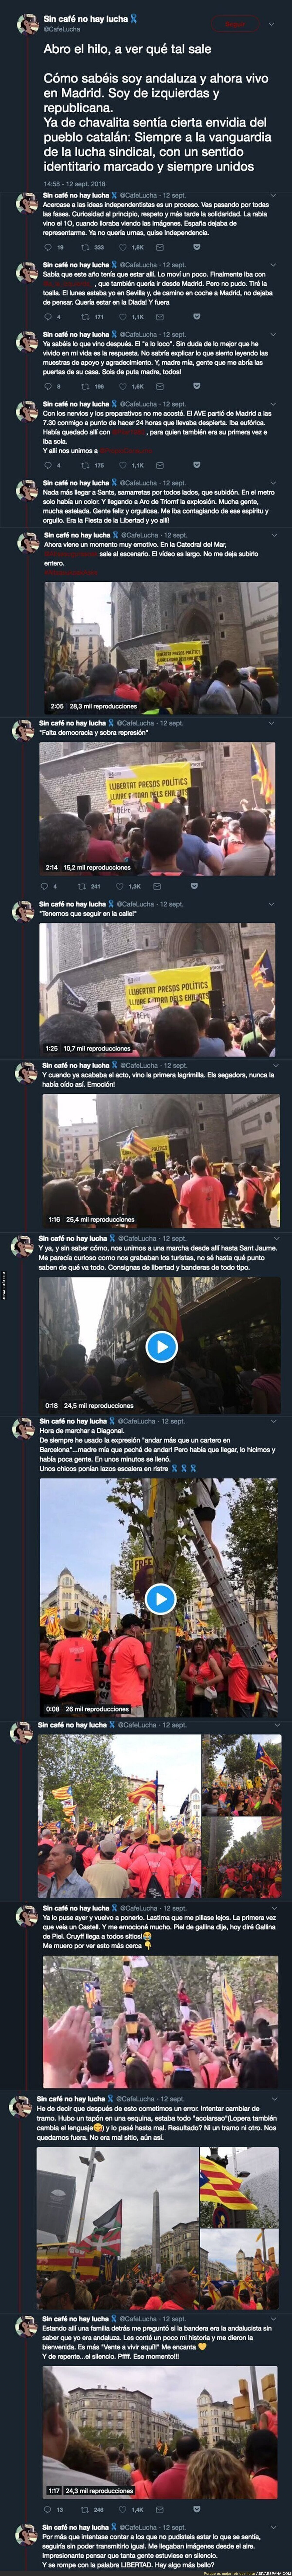 La emotiva historia de una andaluza viviendo la diada de Catalunya por primera vez